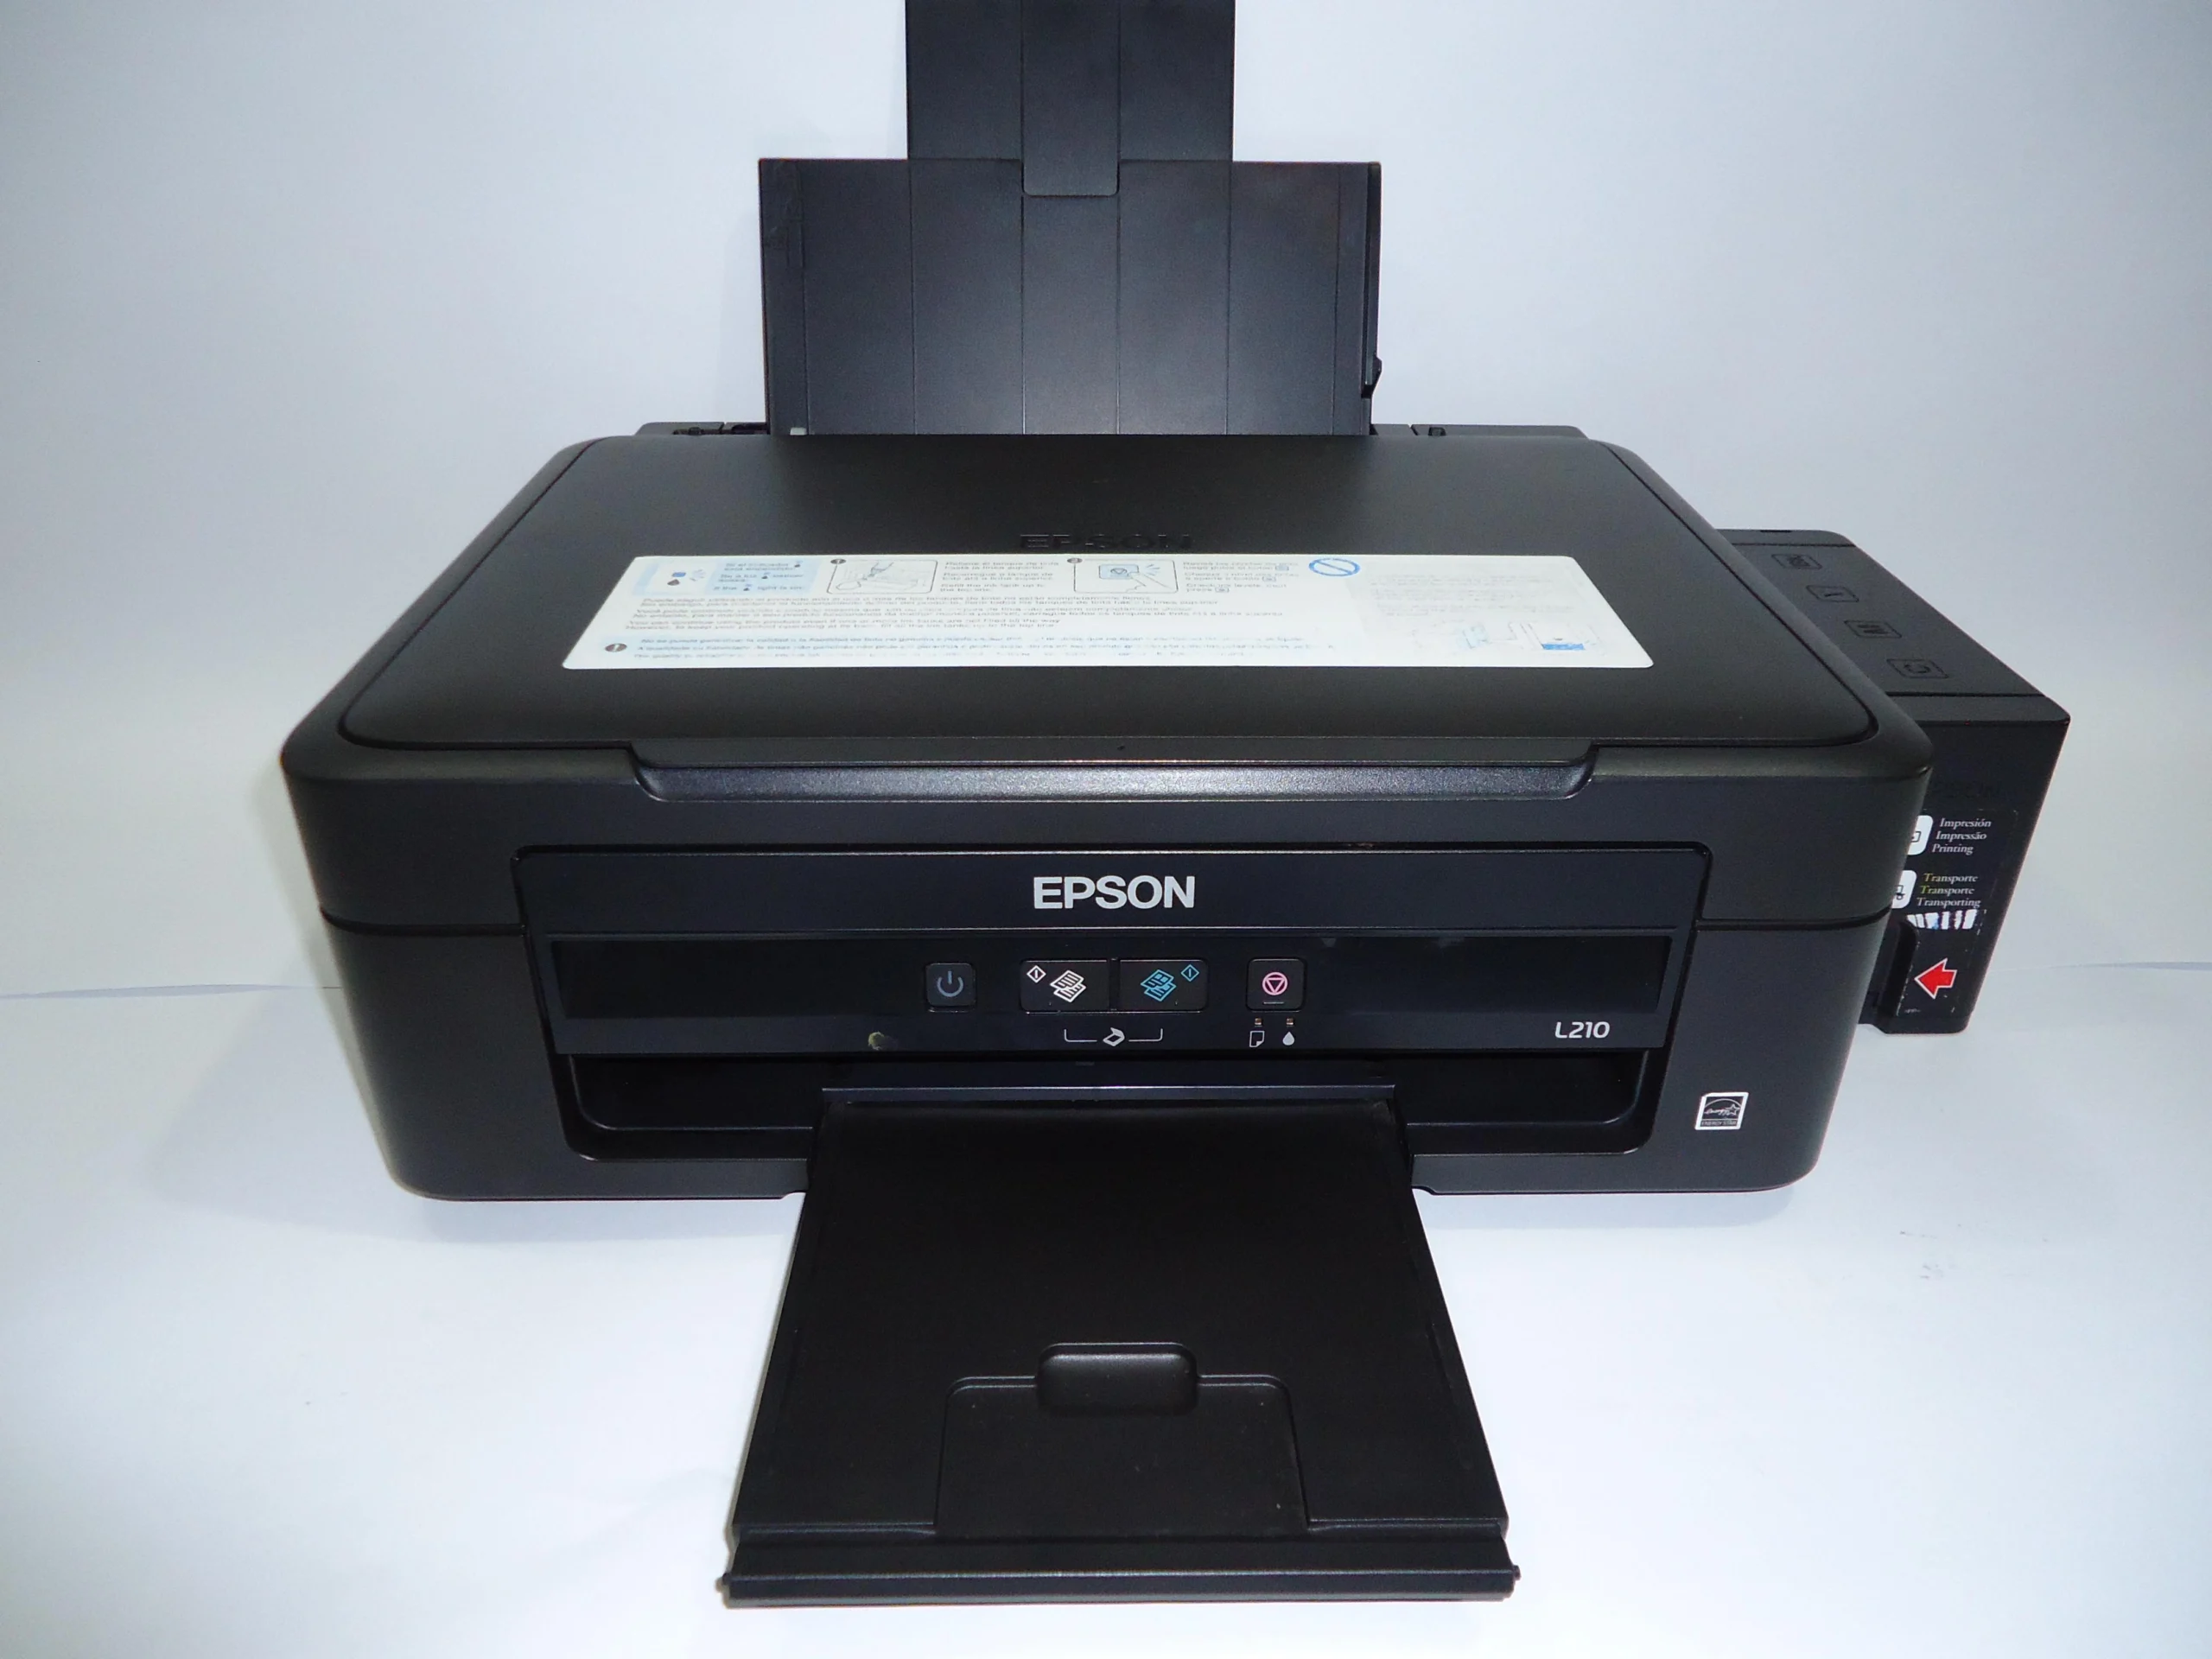 epson l210 caracteristicas tiene wifi - Qué tipo de impresora es la Epson L210